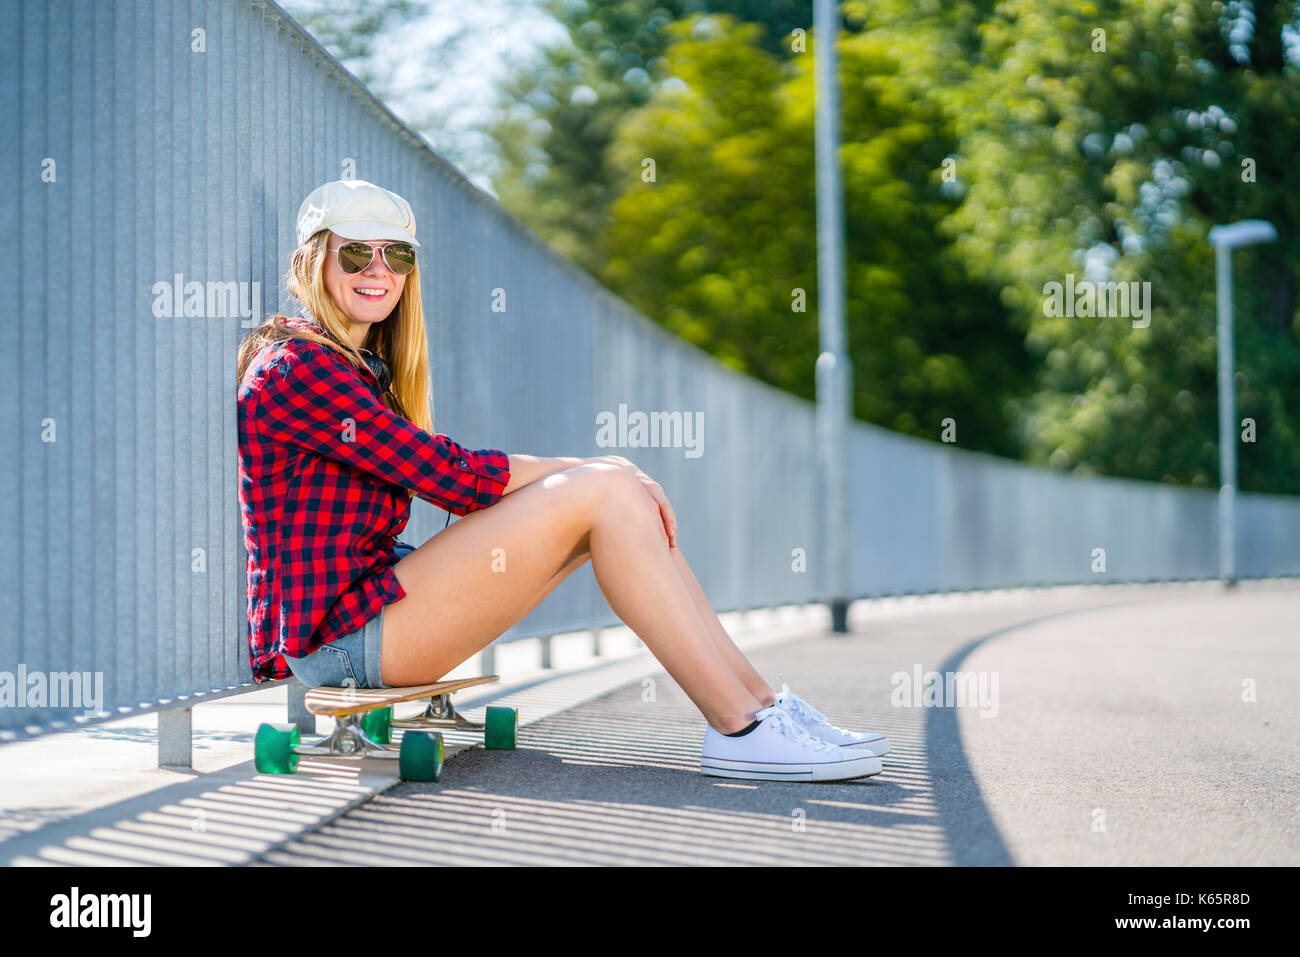 Mujer de 22 años de edad, sentada sobre longboard, se inclina por la calle rejas y relaja Foto de stock